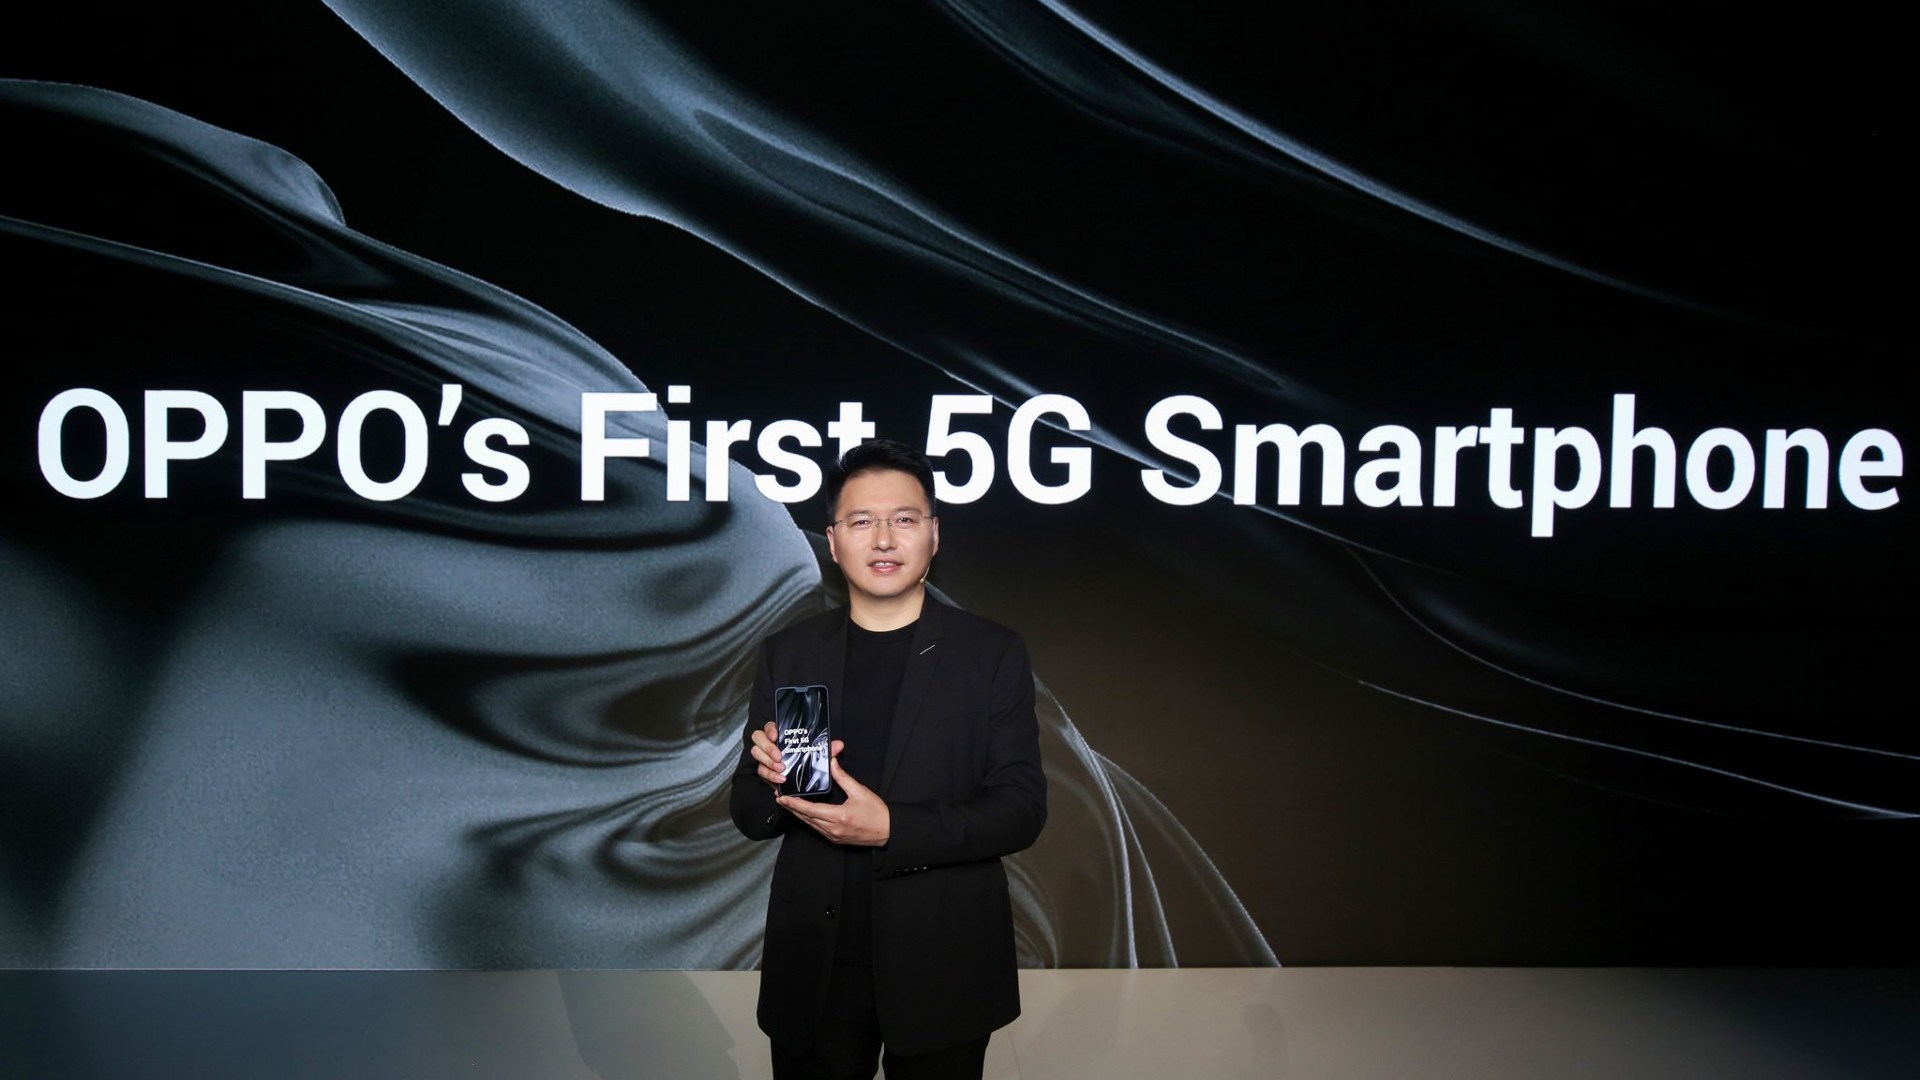 Oppo, Snapdragon 855 ile güçlendirilmiş ilk 5G'li telefonunu duyurdu